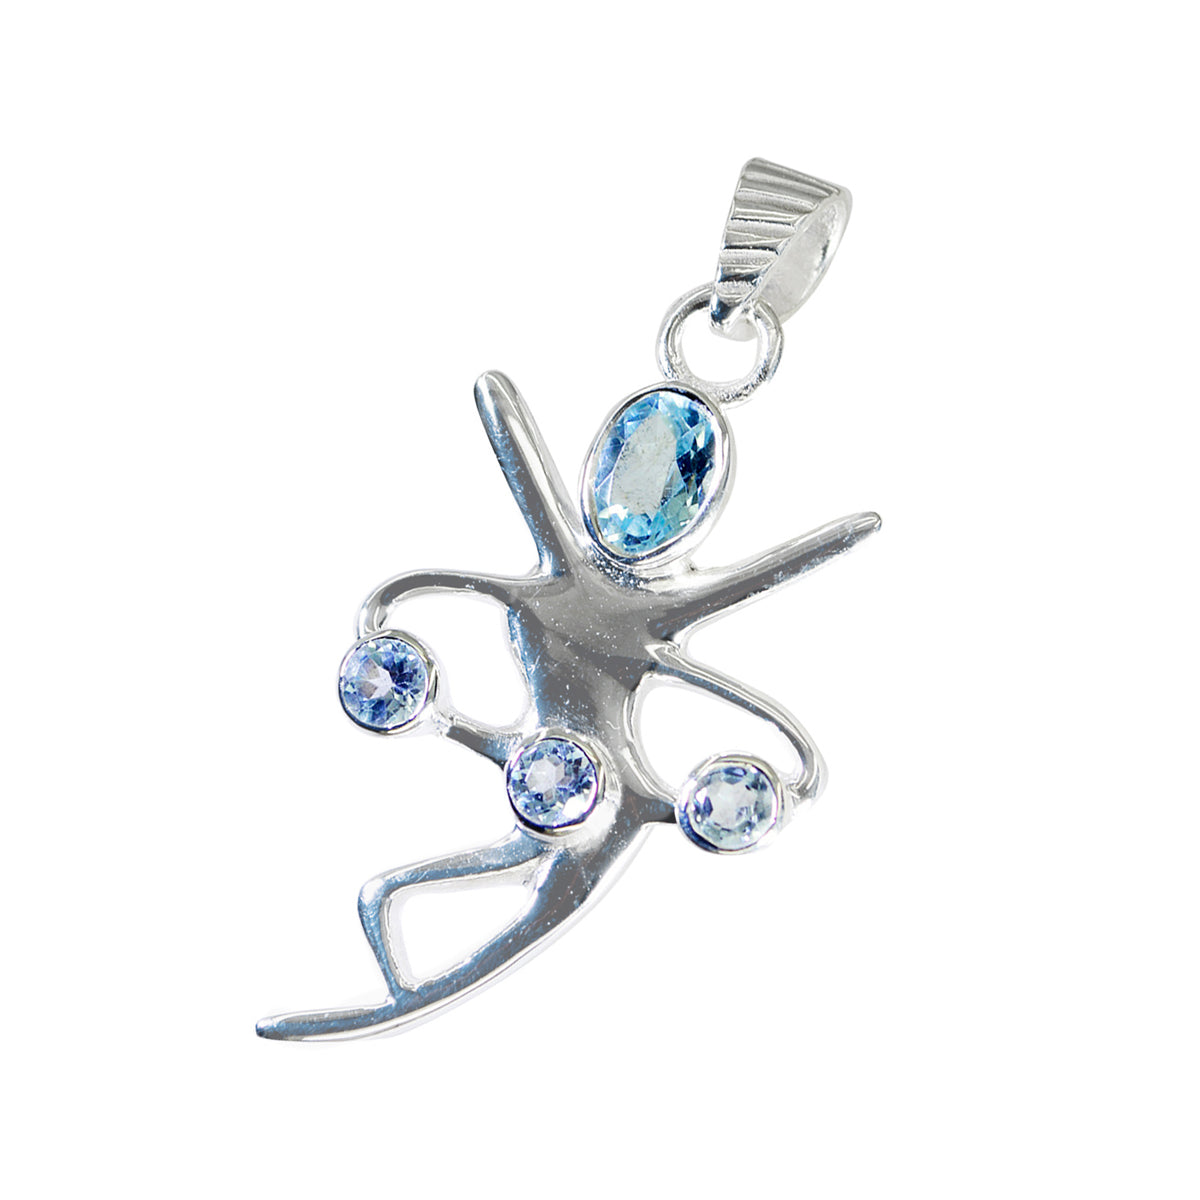 Riyo natuurlijke edelsteen multifacet blauw blauw topaas 1042 sterling zilveren hanger cadeau voor goede vrijdag